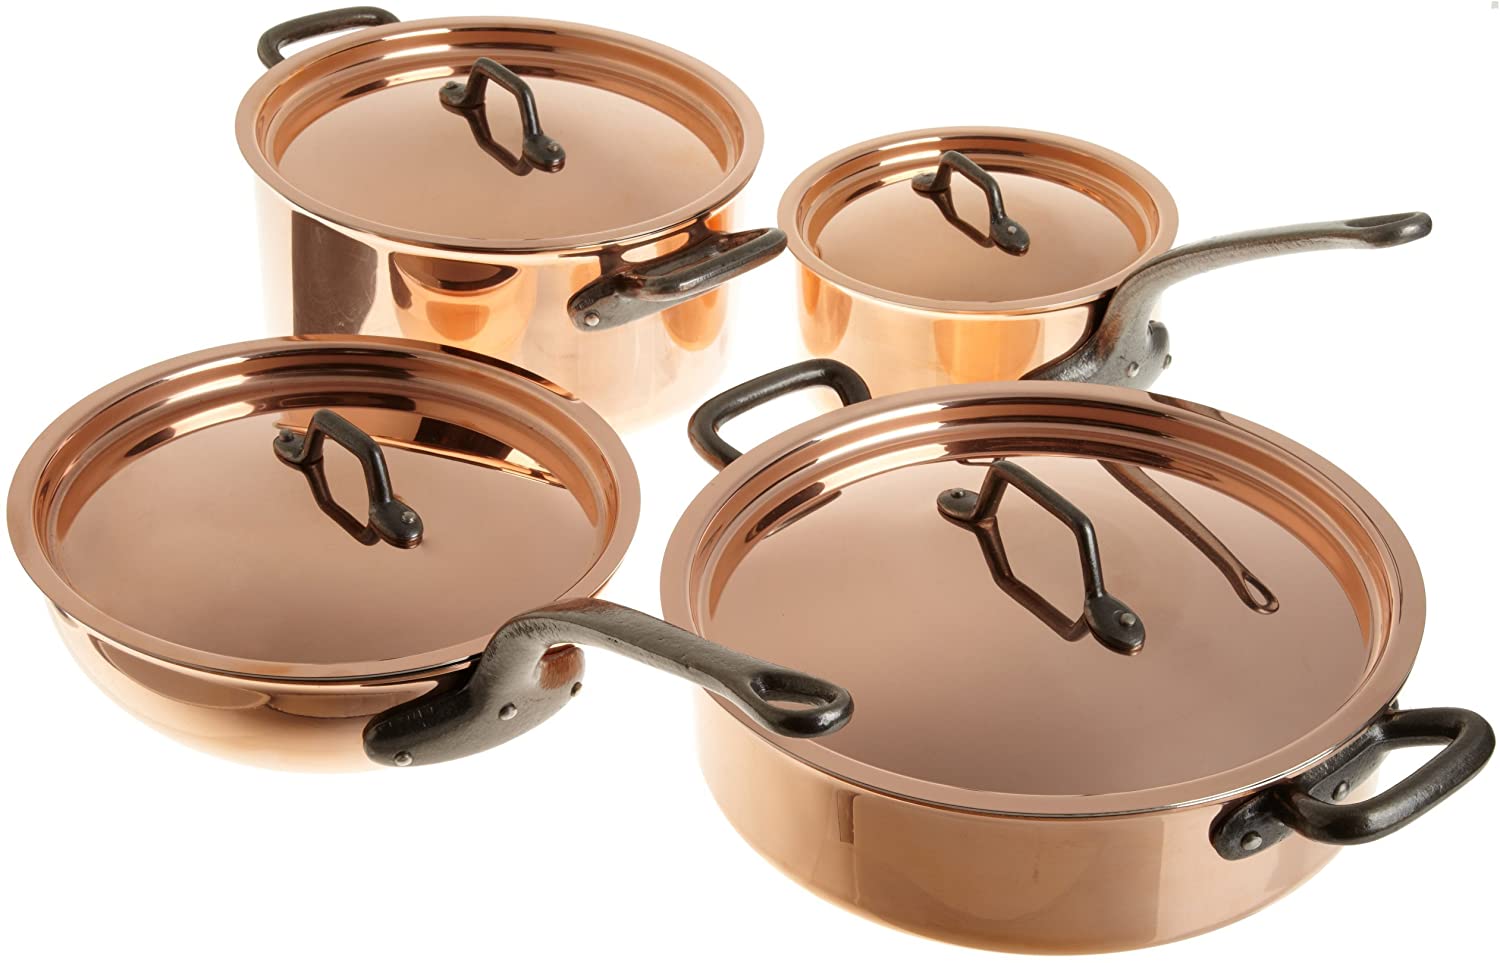 Copper Pots and pans